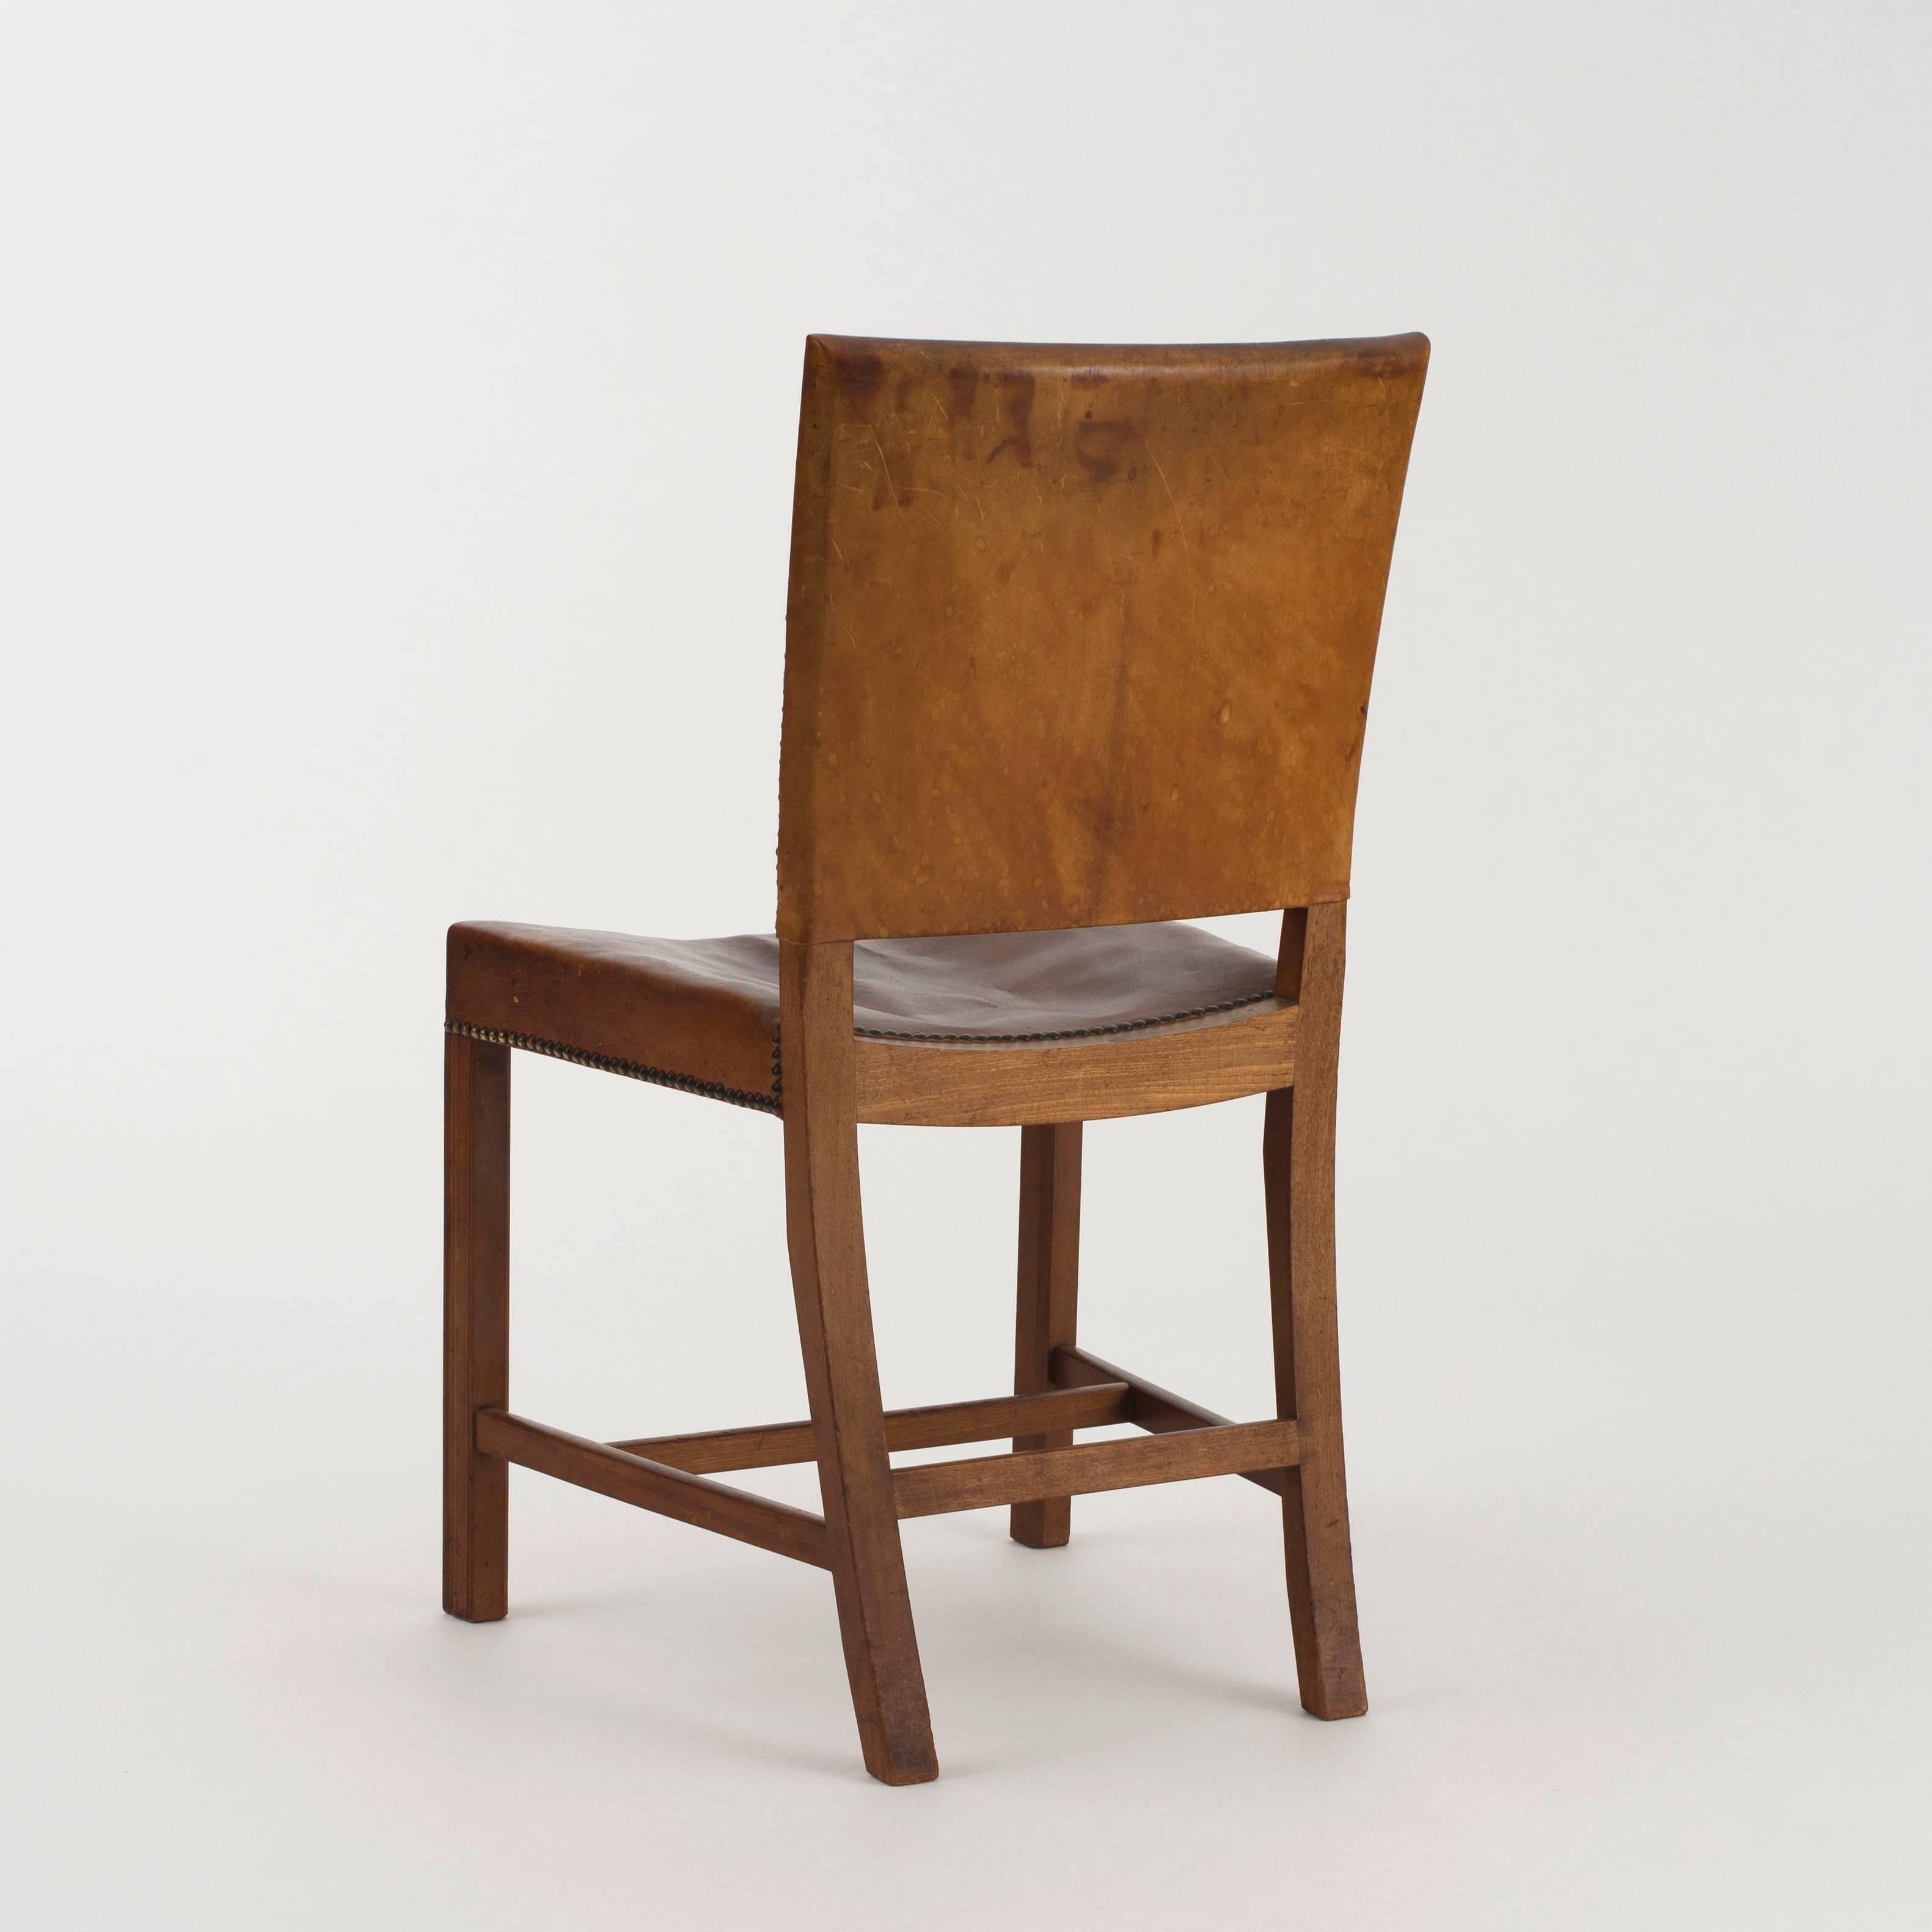 Scandinavian Modern Kaare Klint Red Chair, 1920s